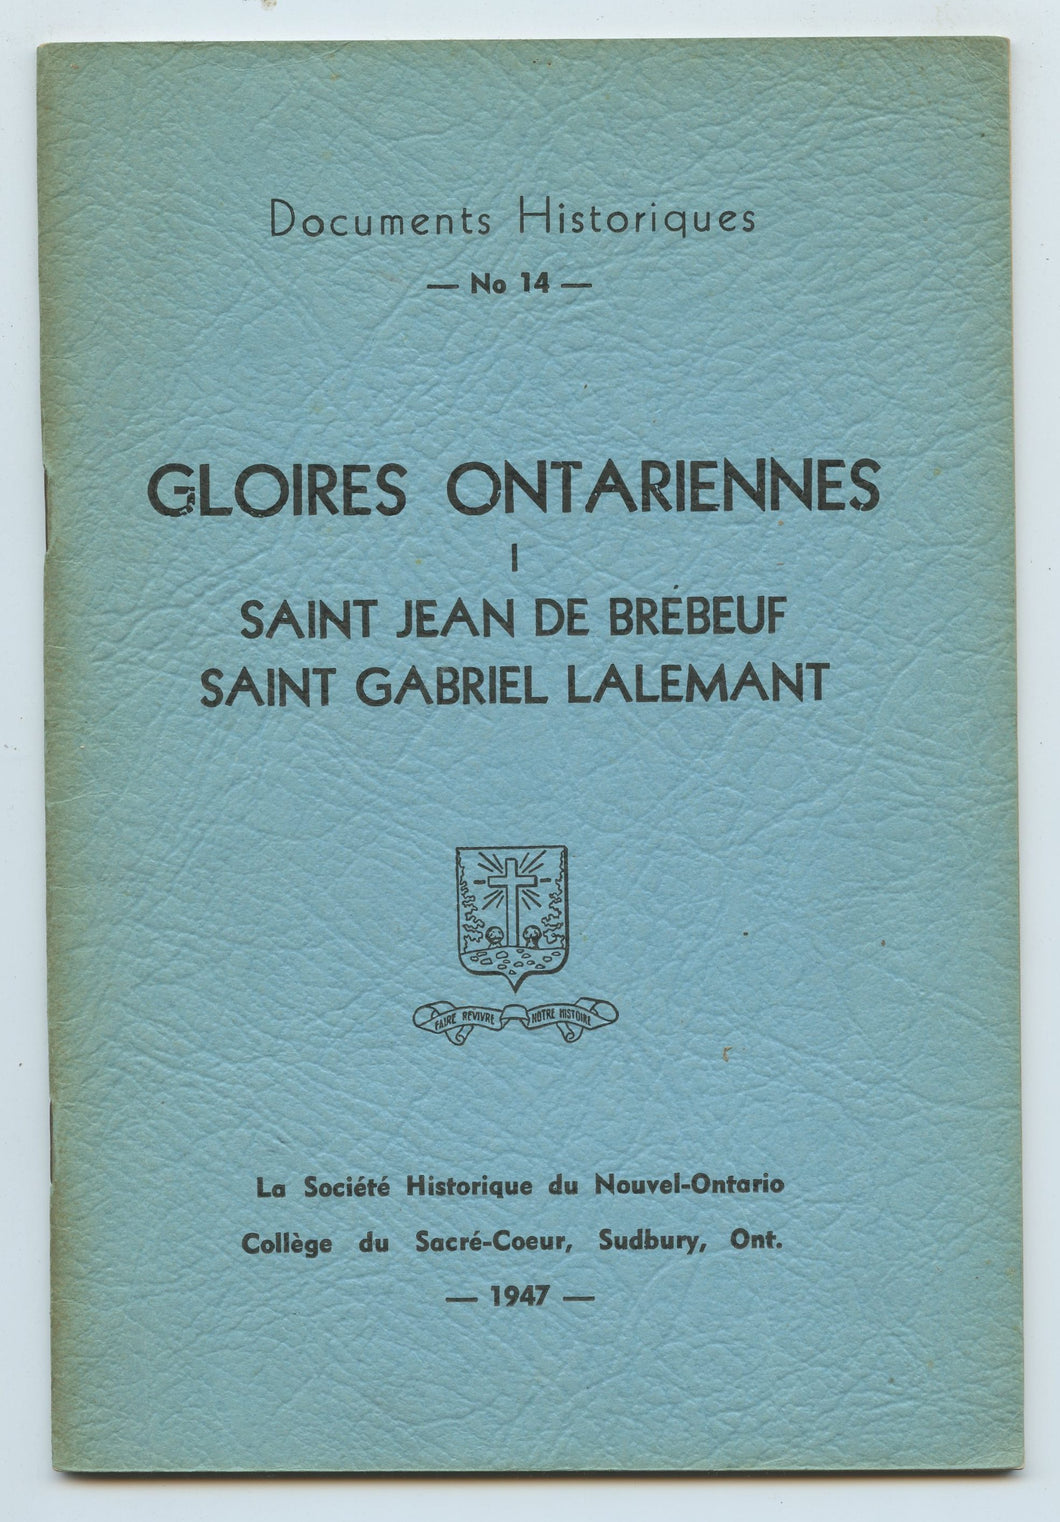 Gloires Ontariennes I: Saint Jean de Brebeuf, Saint Gabriel Lalemant